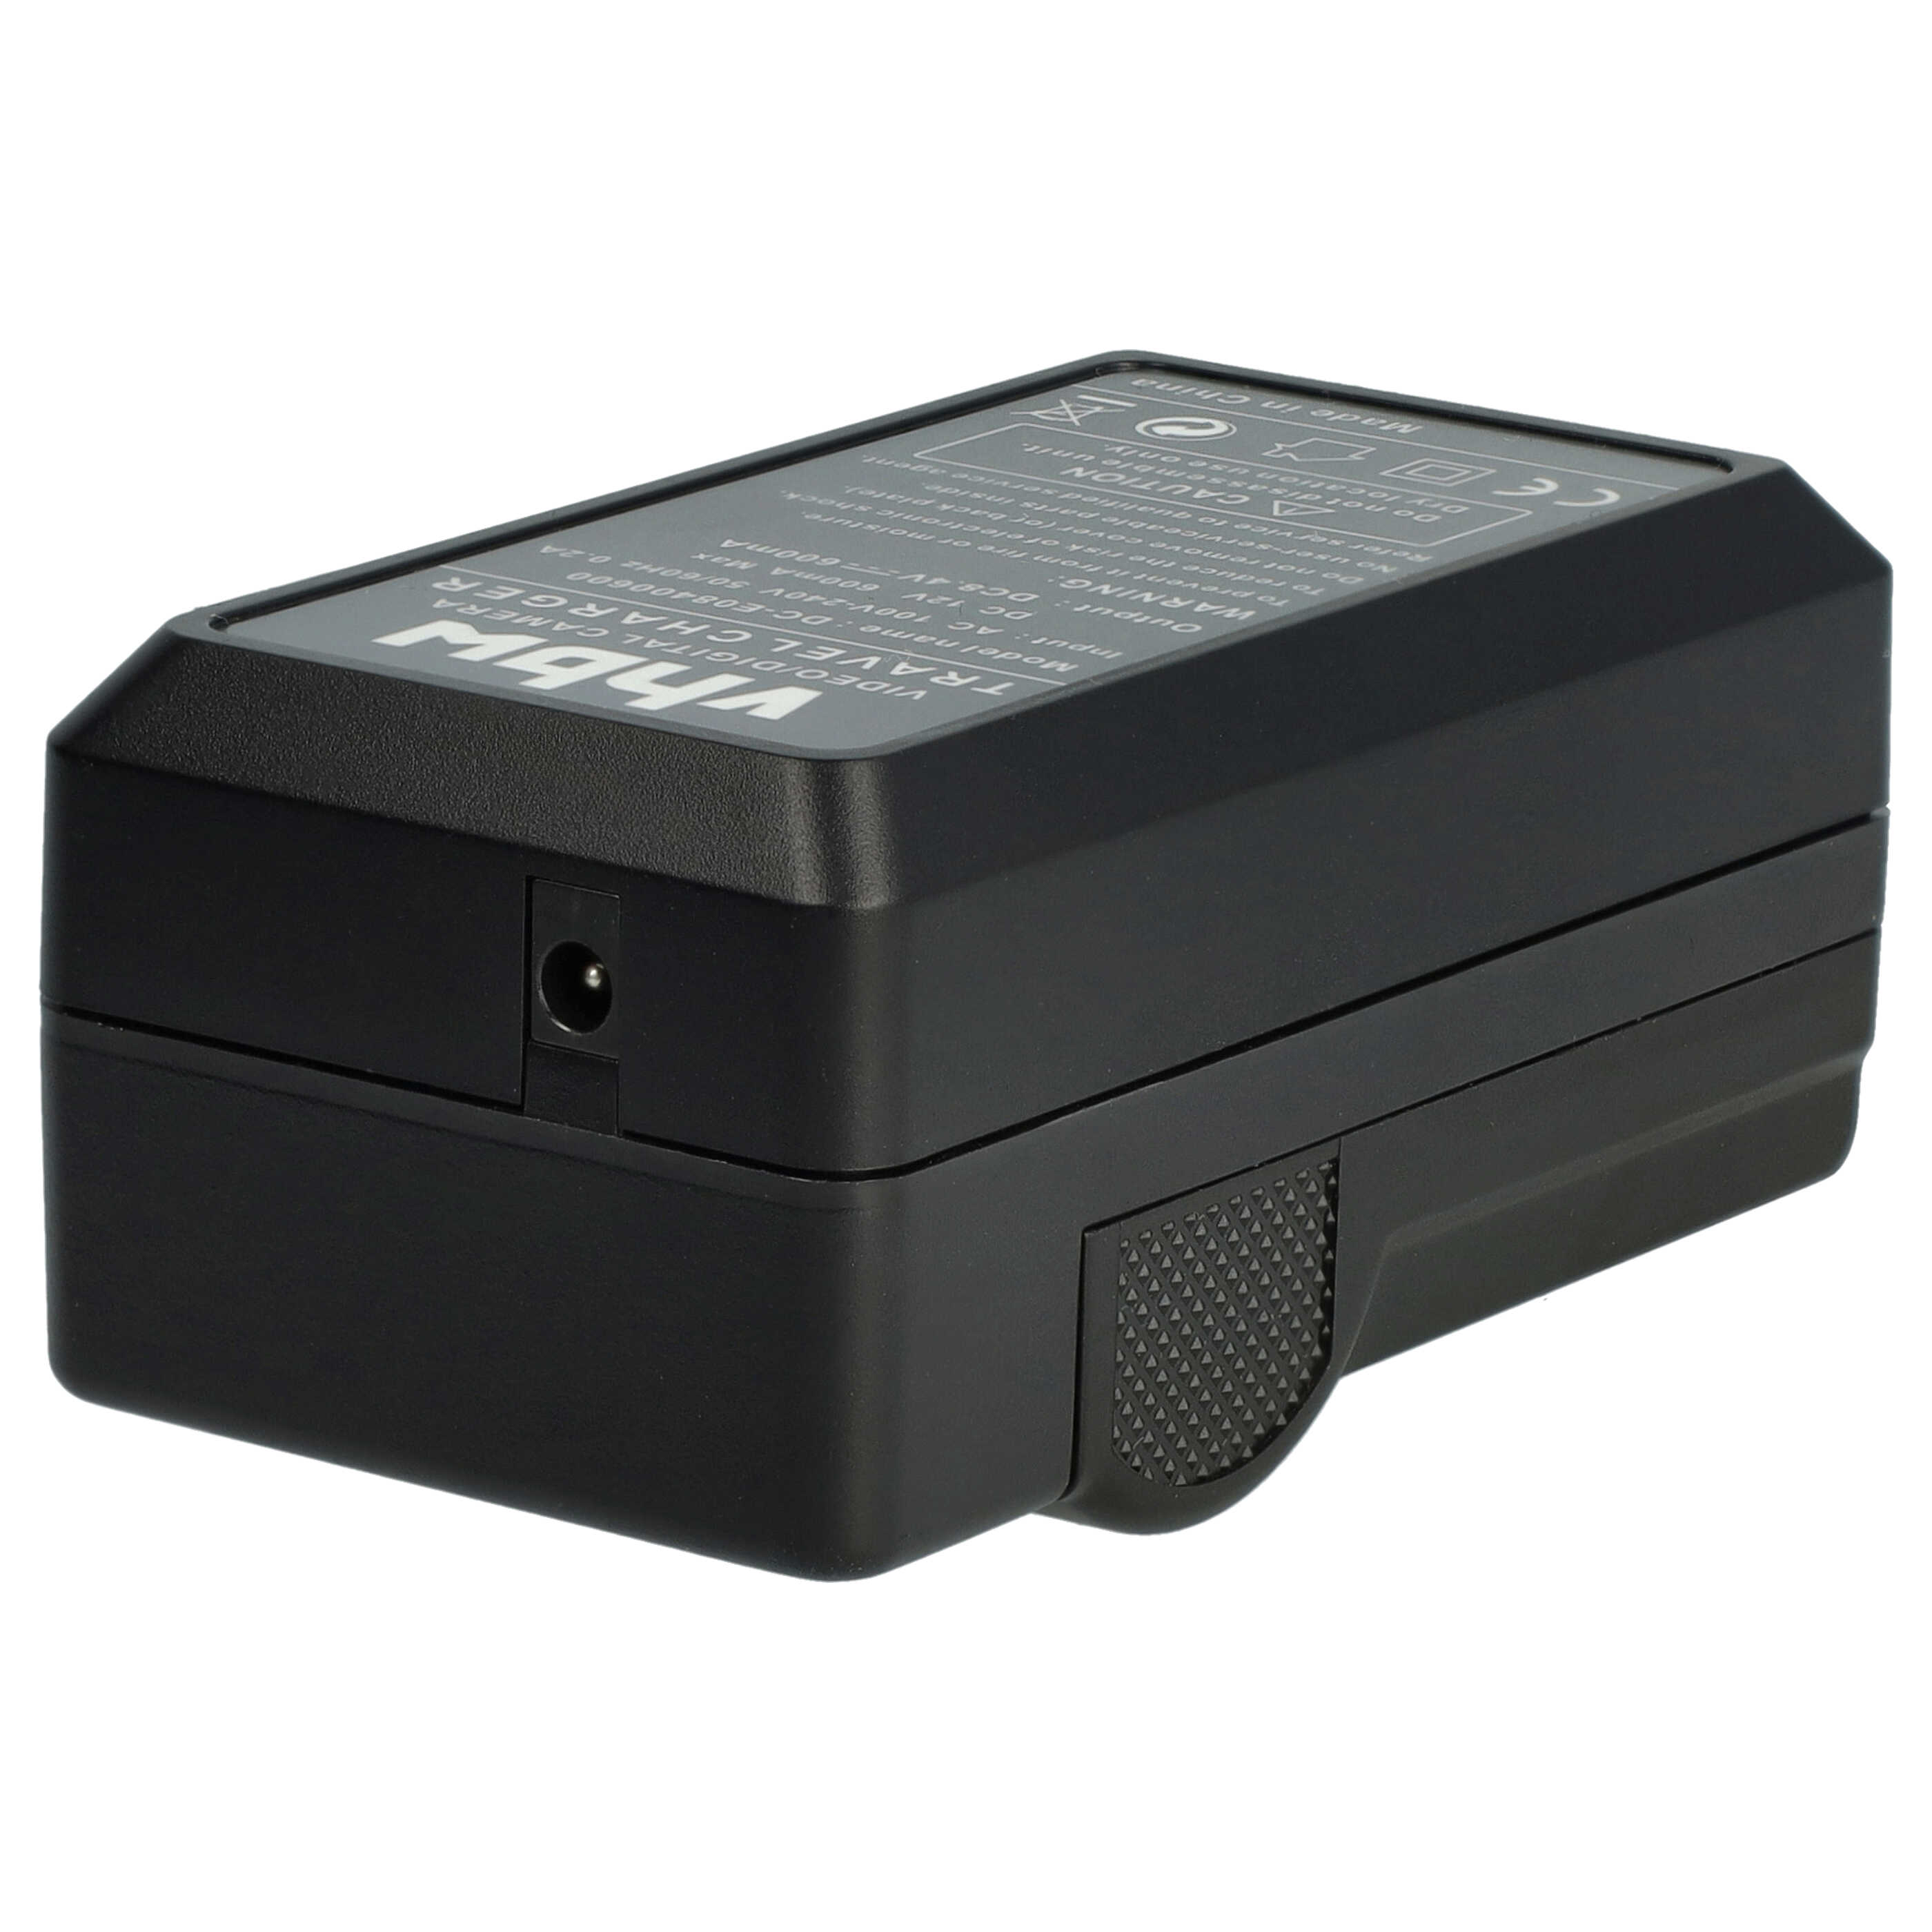 Akku Ladegerät passend für V-Lux DMC-FZ100 Kamera u.a. - 0,6 A, 8,4 V